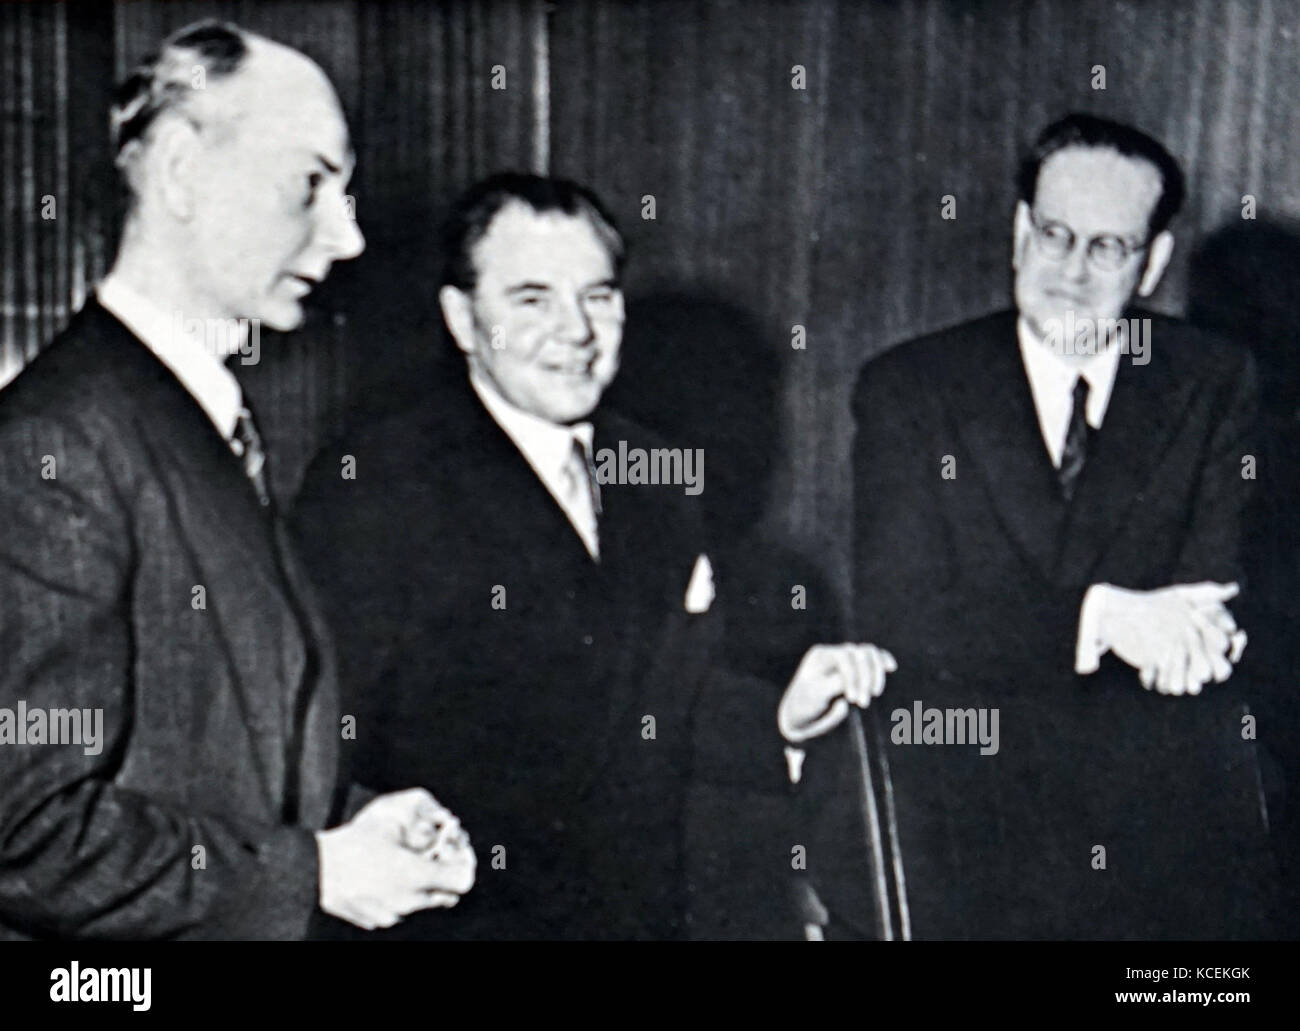 Fotografía de Scandinavian Premiers reunión en Estocolmo. De izquierda a derecha: Einar Gerhardsen (1897-1987) el Primer Ministro de Noruega, Hans Hedtoft (1903-1955), Primer Ministro de Dinamarca, y Tage Erlander (1901-1985), Primer Ministro de Suecia. Fecha Siglo XX Foto de stock